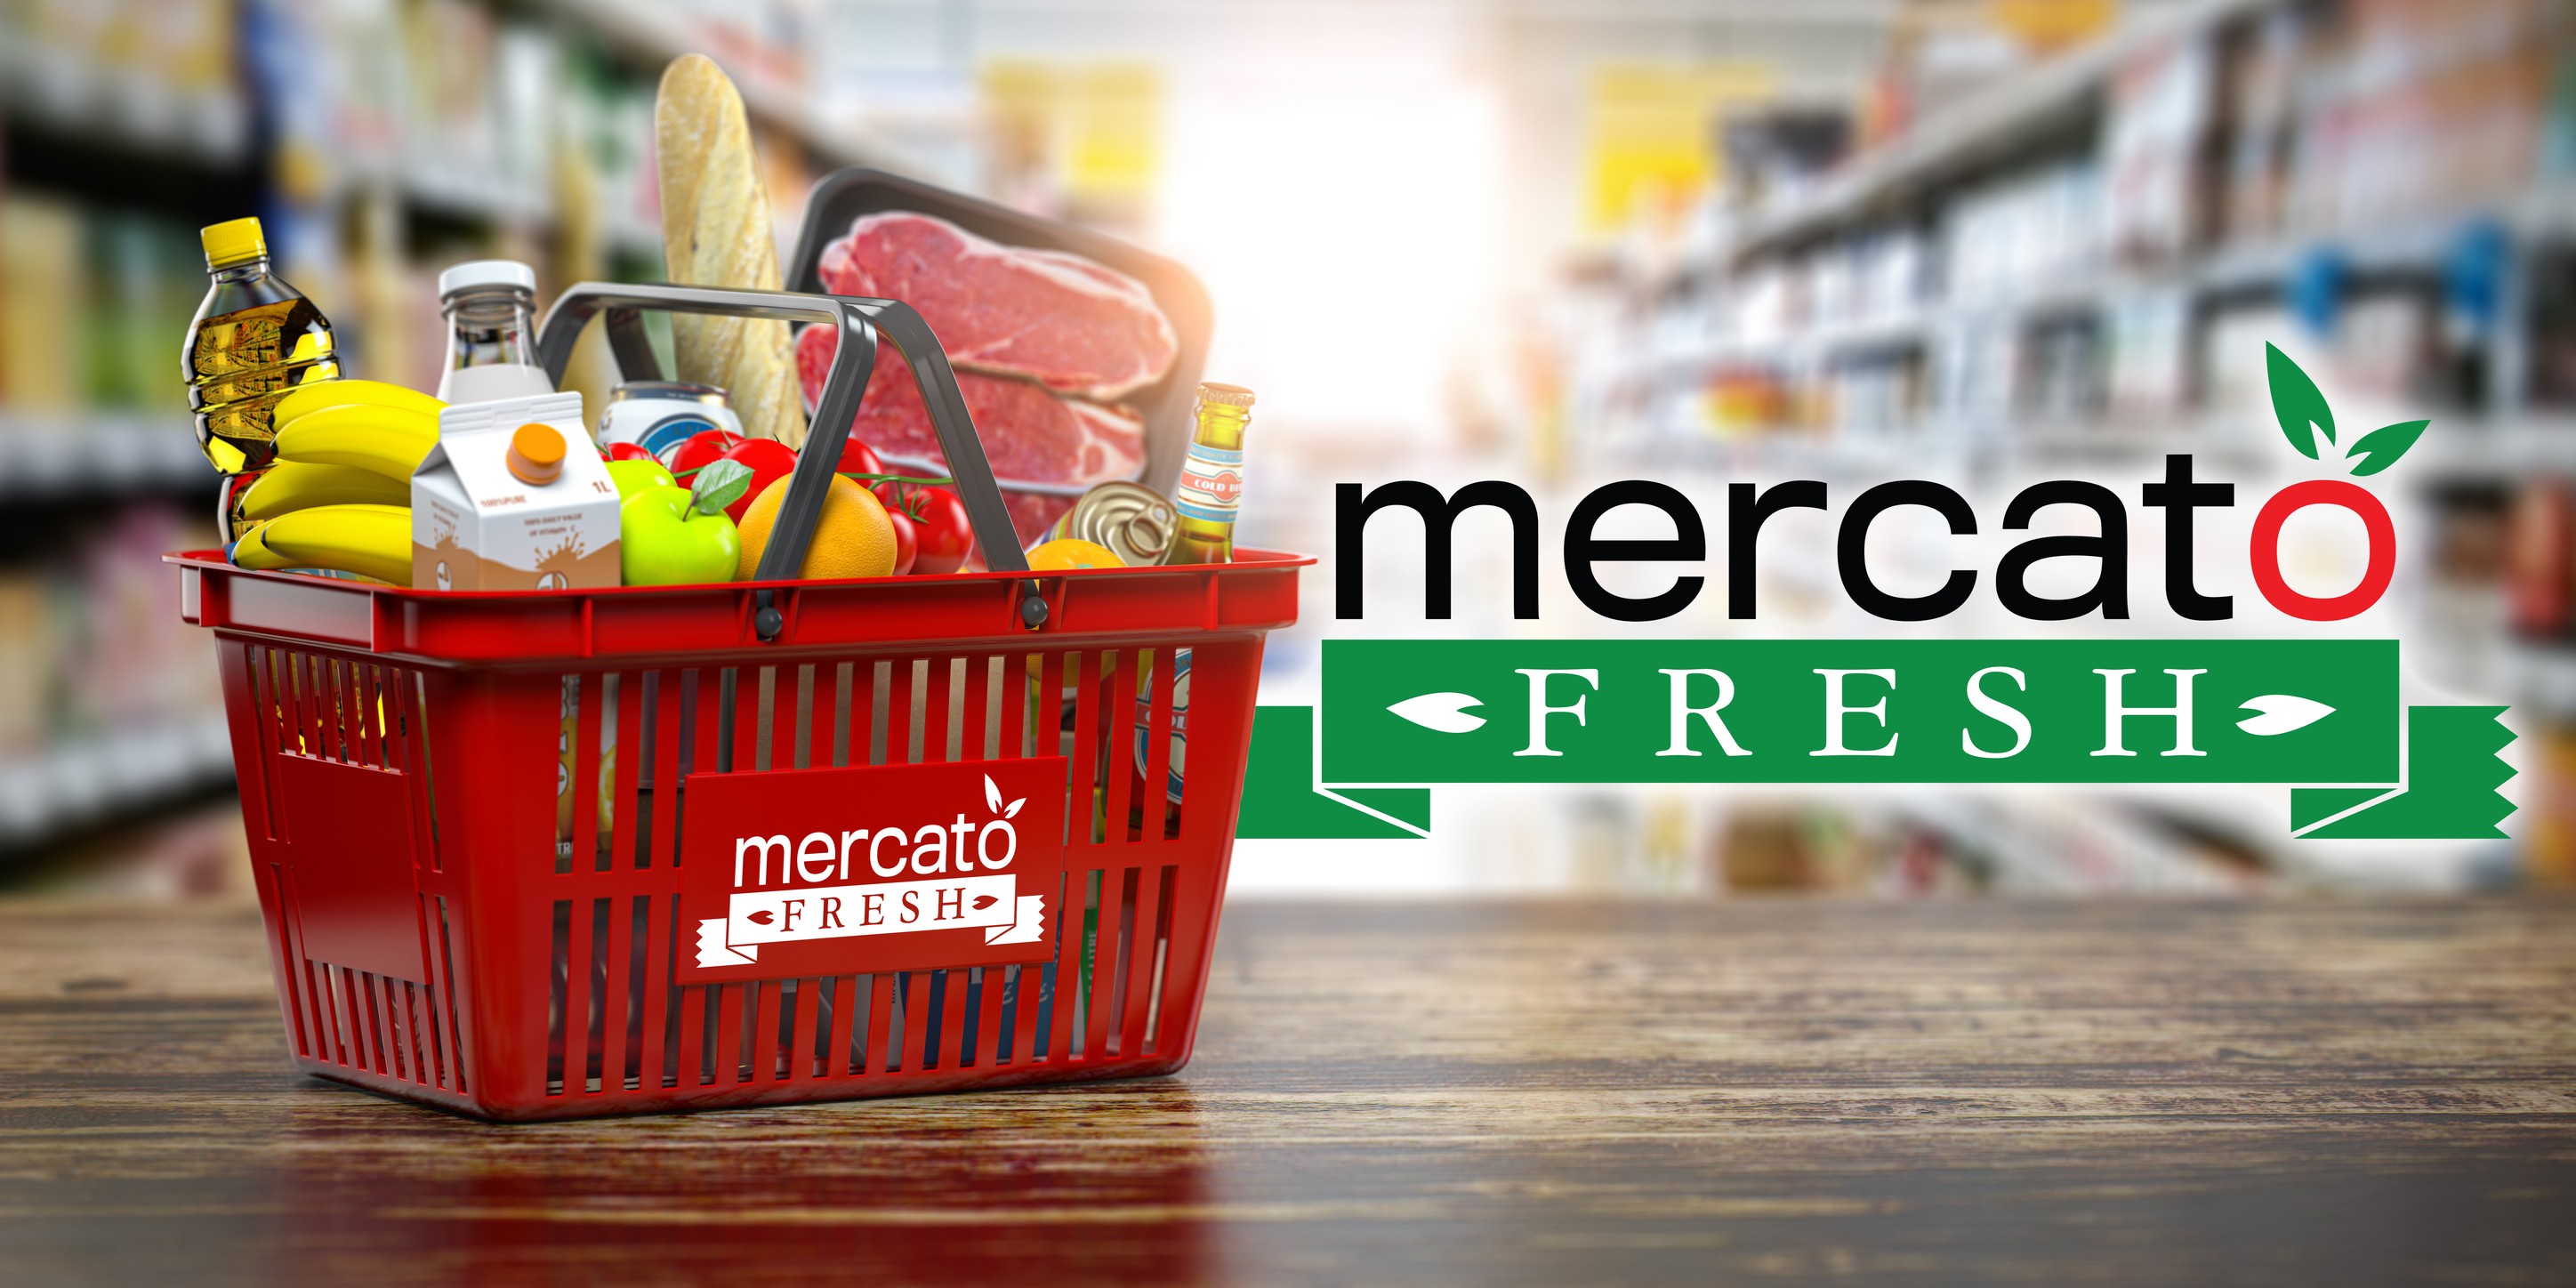 Mercato Fresh - Grocery Store